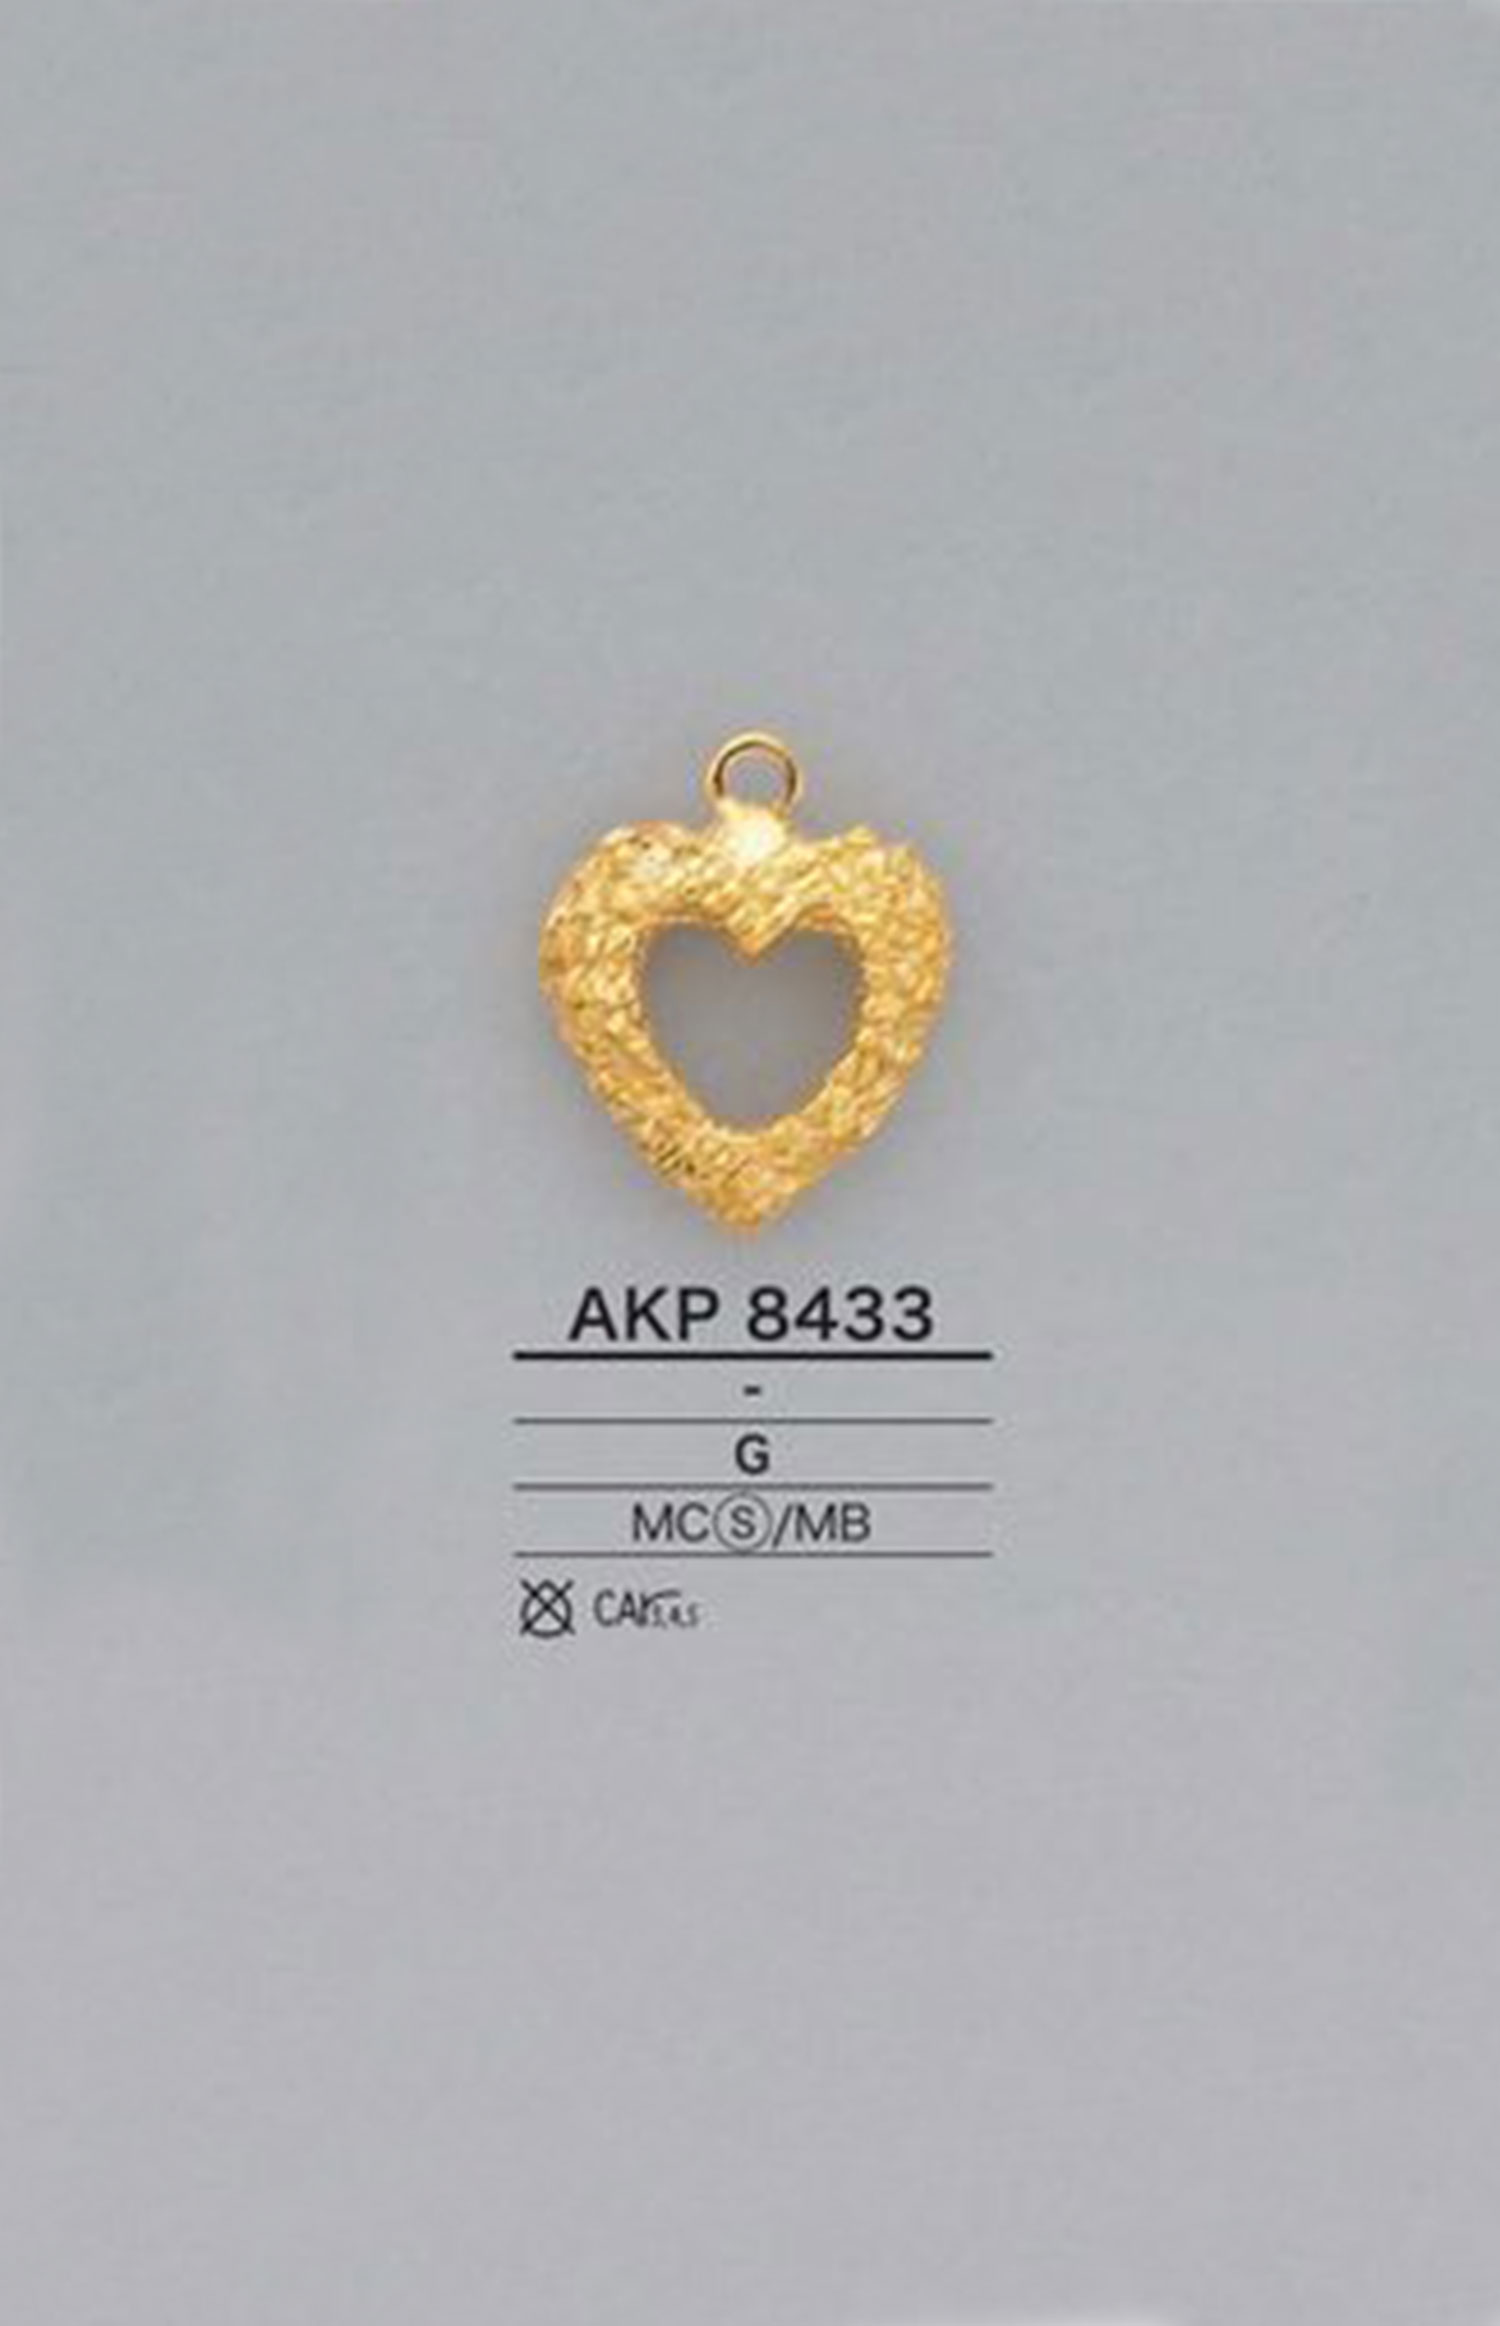 AKP8433 Ponto De Zíper Em Forma De Coração (Guia De Puxar) IRIS